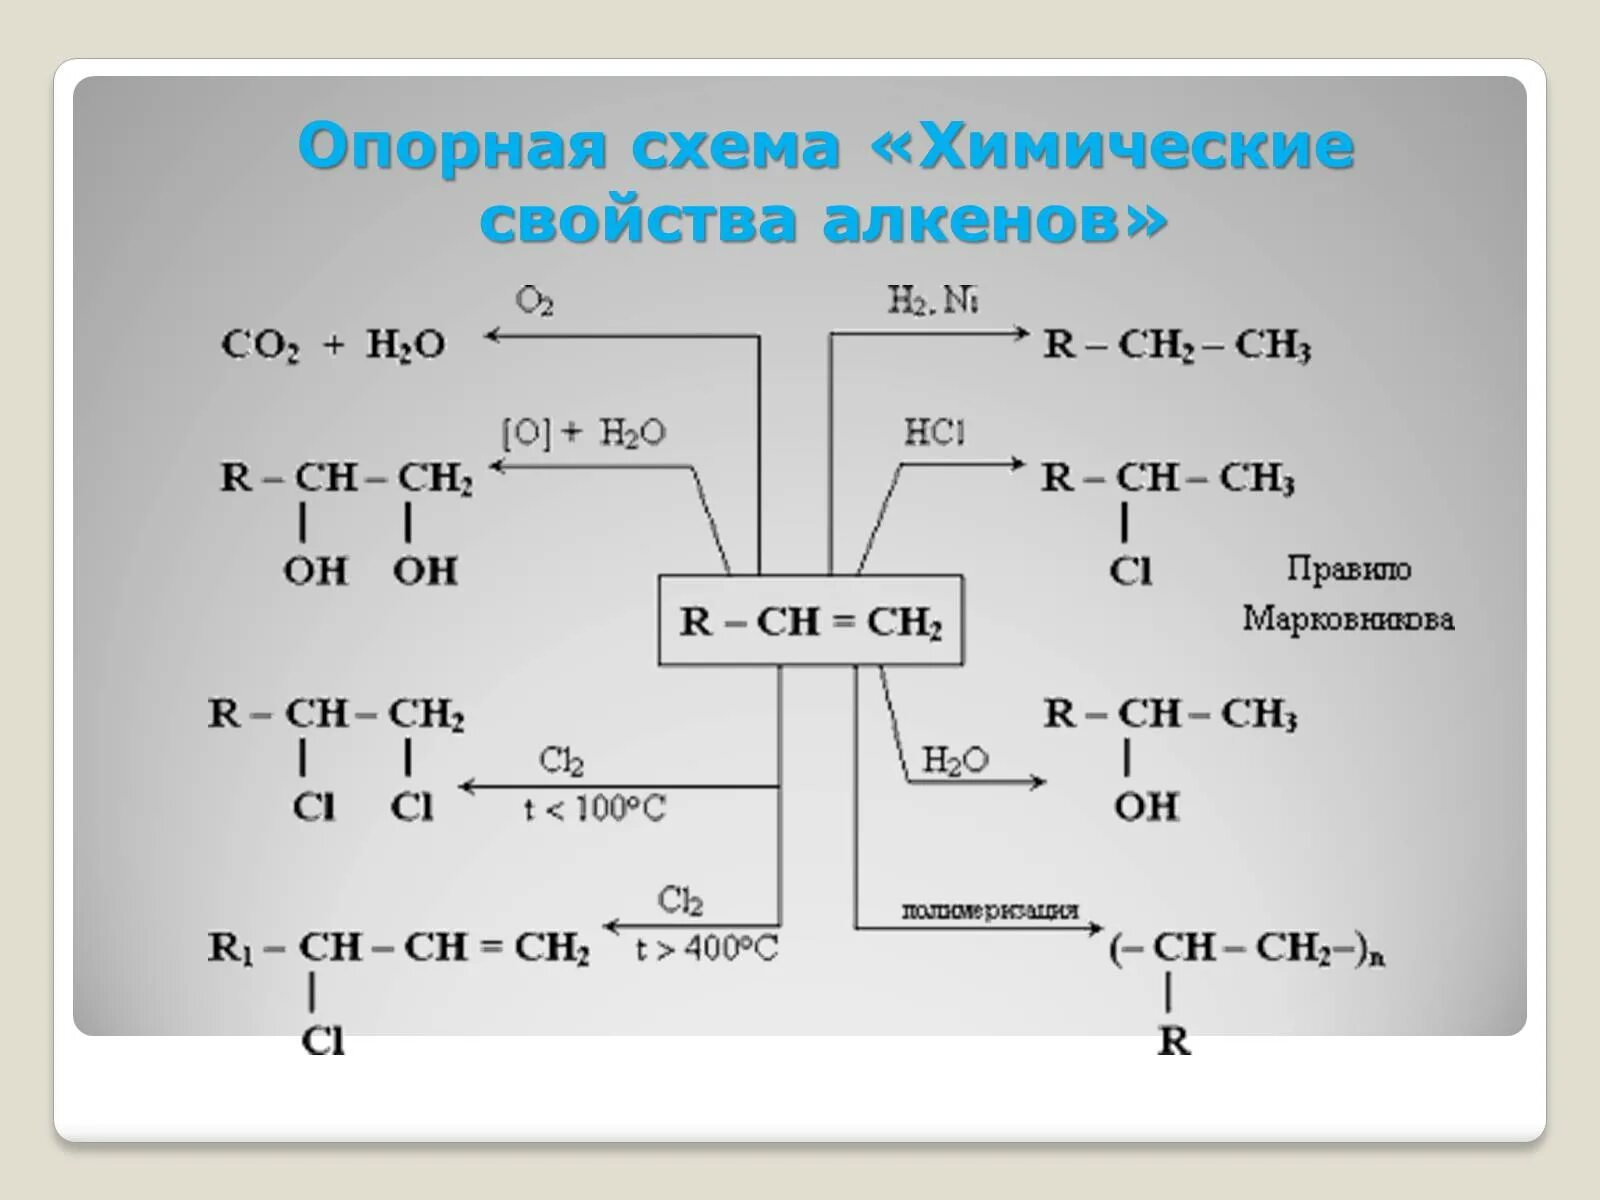 Алкены схемы. Схема алкенов. Химичесие свойства алкинов. Химические свойства алкенов. Химические свойства алкинов схема.